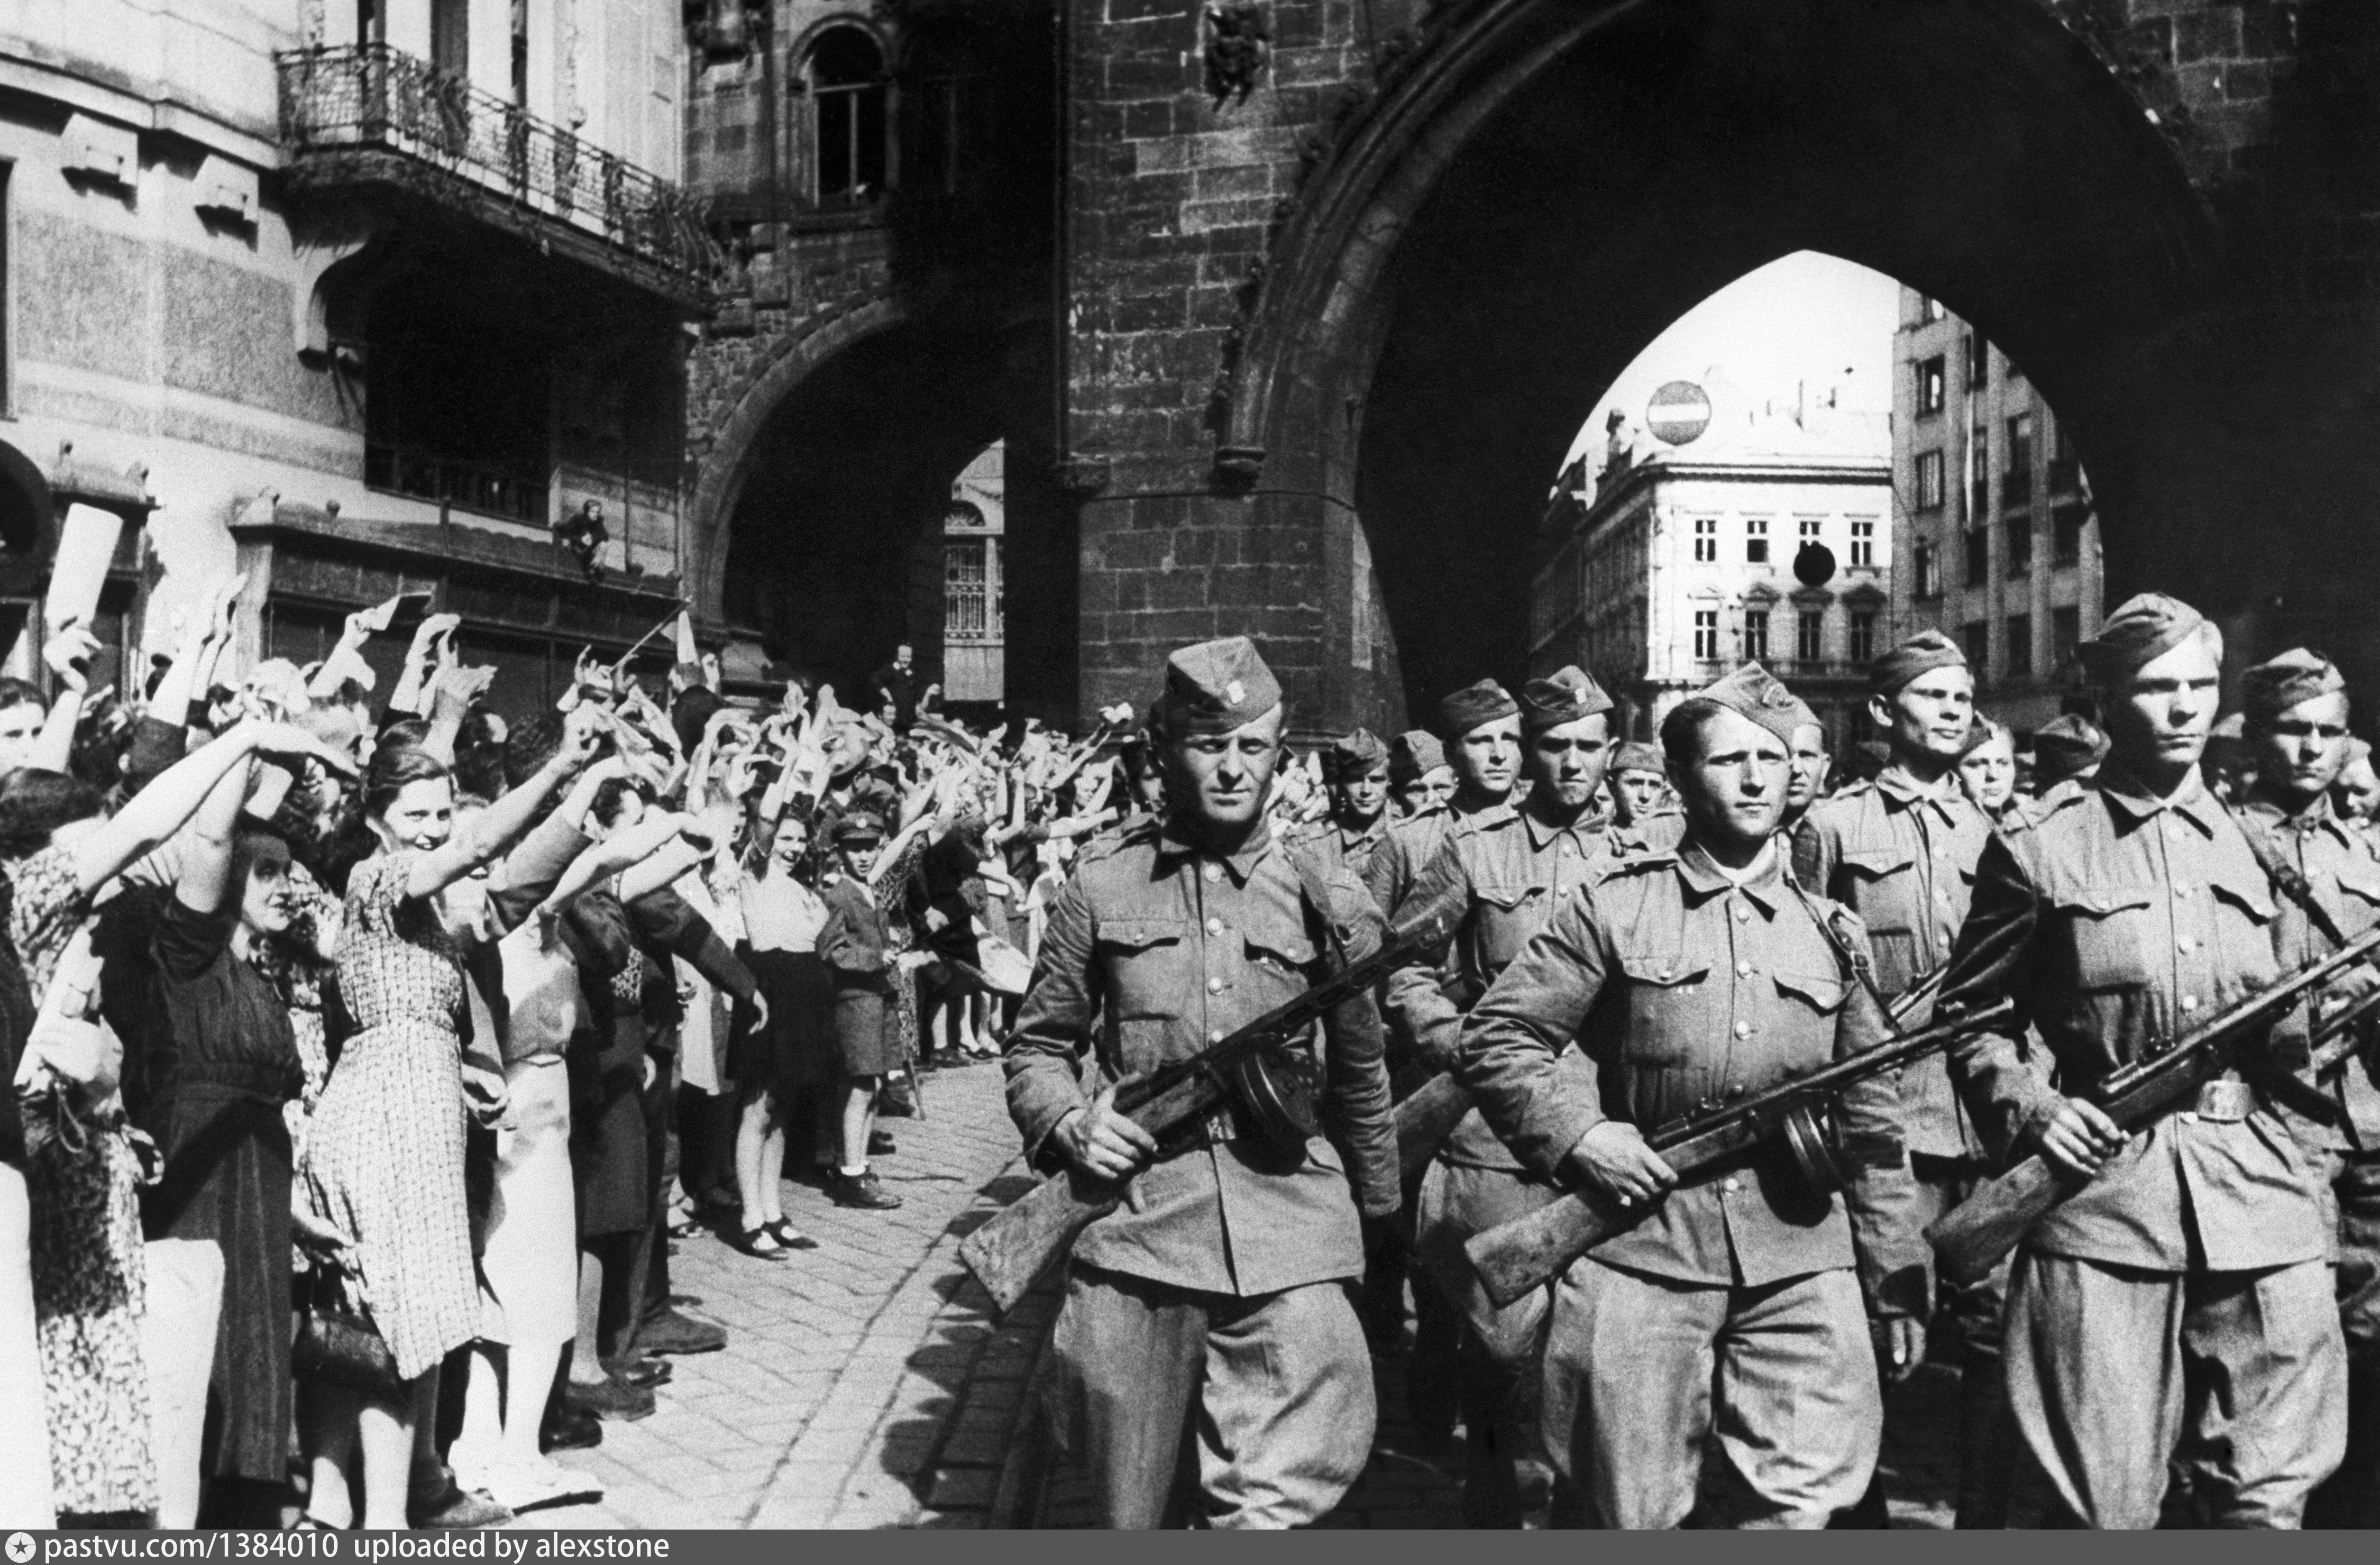 Победа 1945 года над фашистской германией. Освобождение Братиславы 1945. 6 Мая 1945 года Пражская операция. Советские войска в Праге 1945 год. Пражская операция 1945 освобождение Чехословакии.